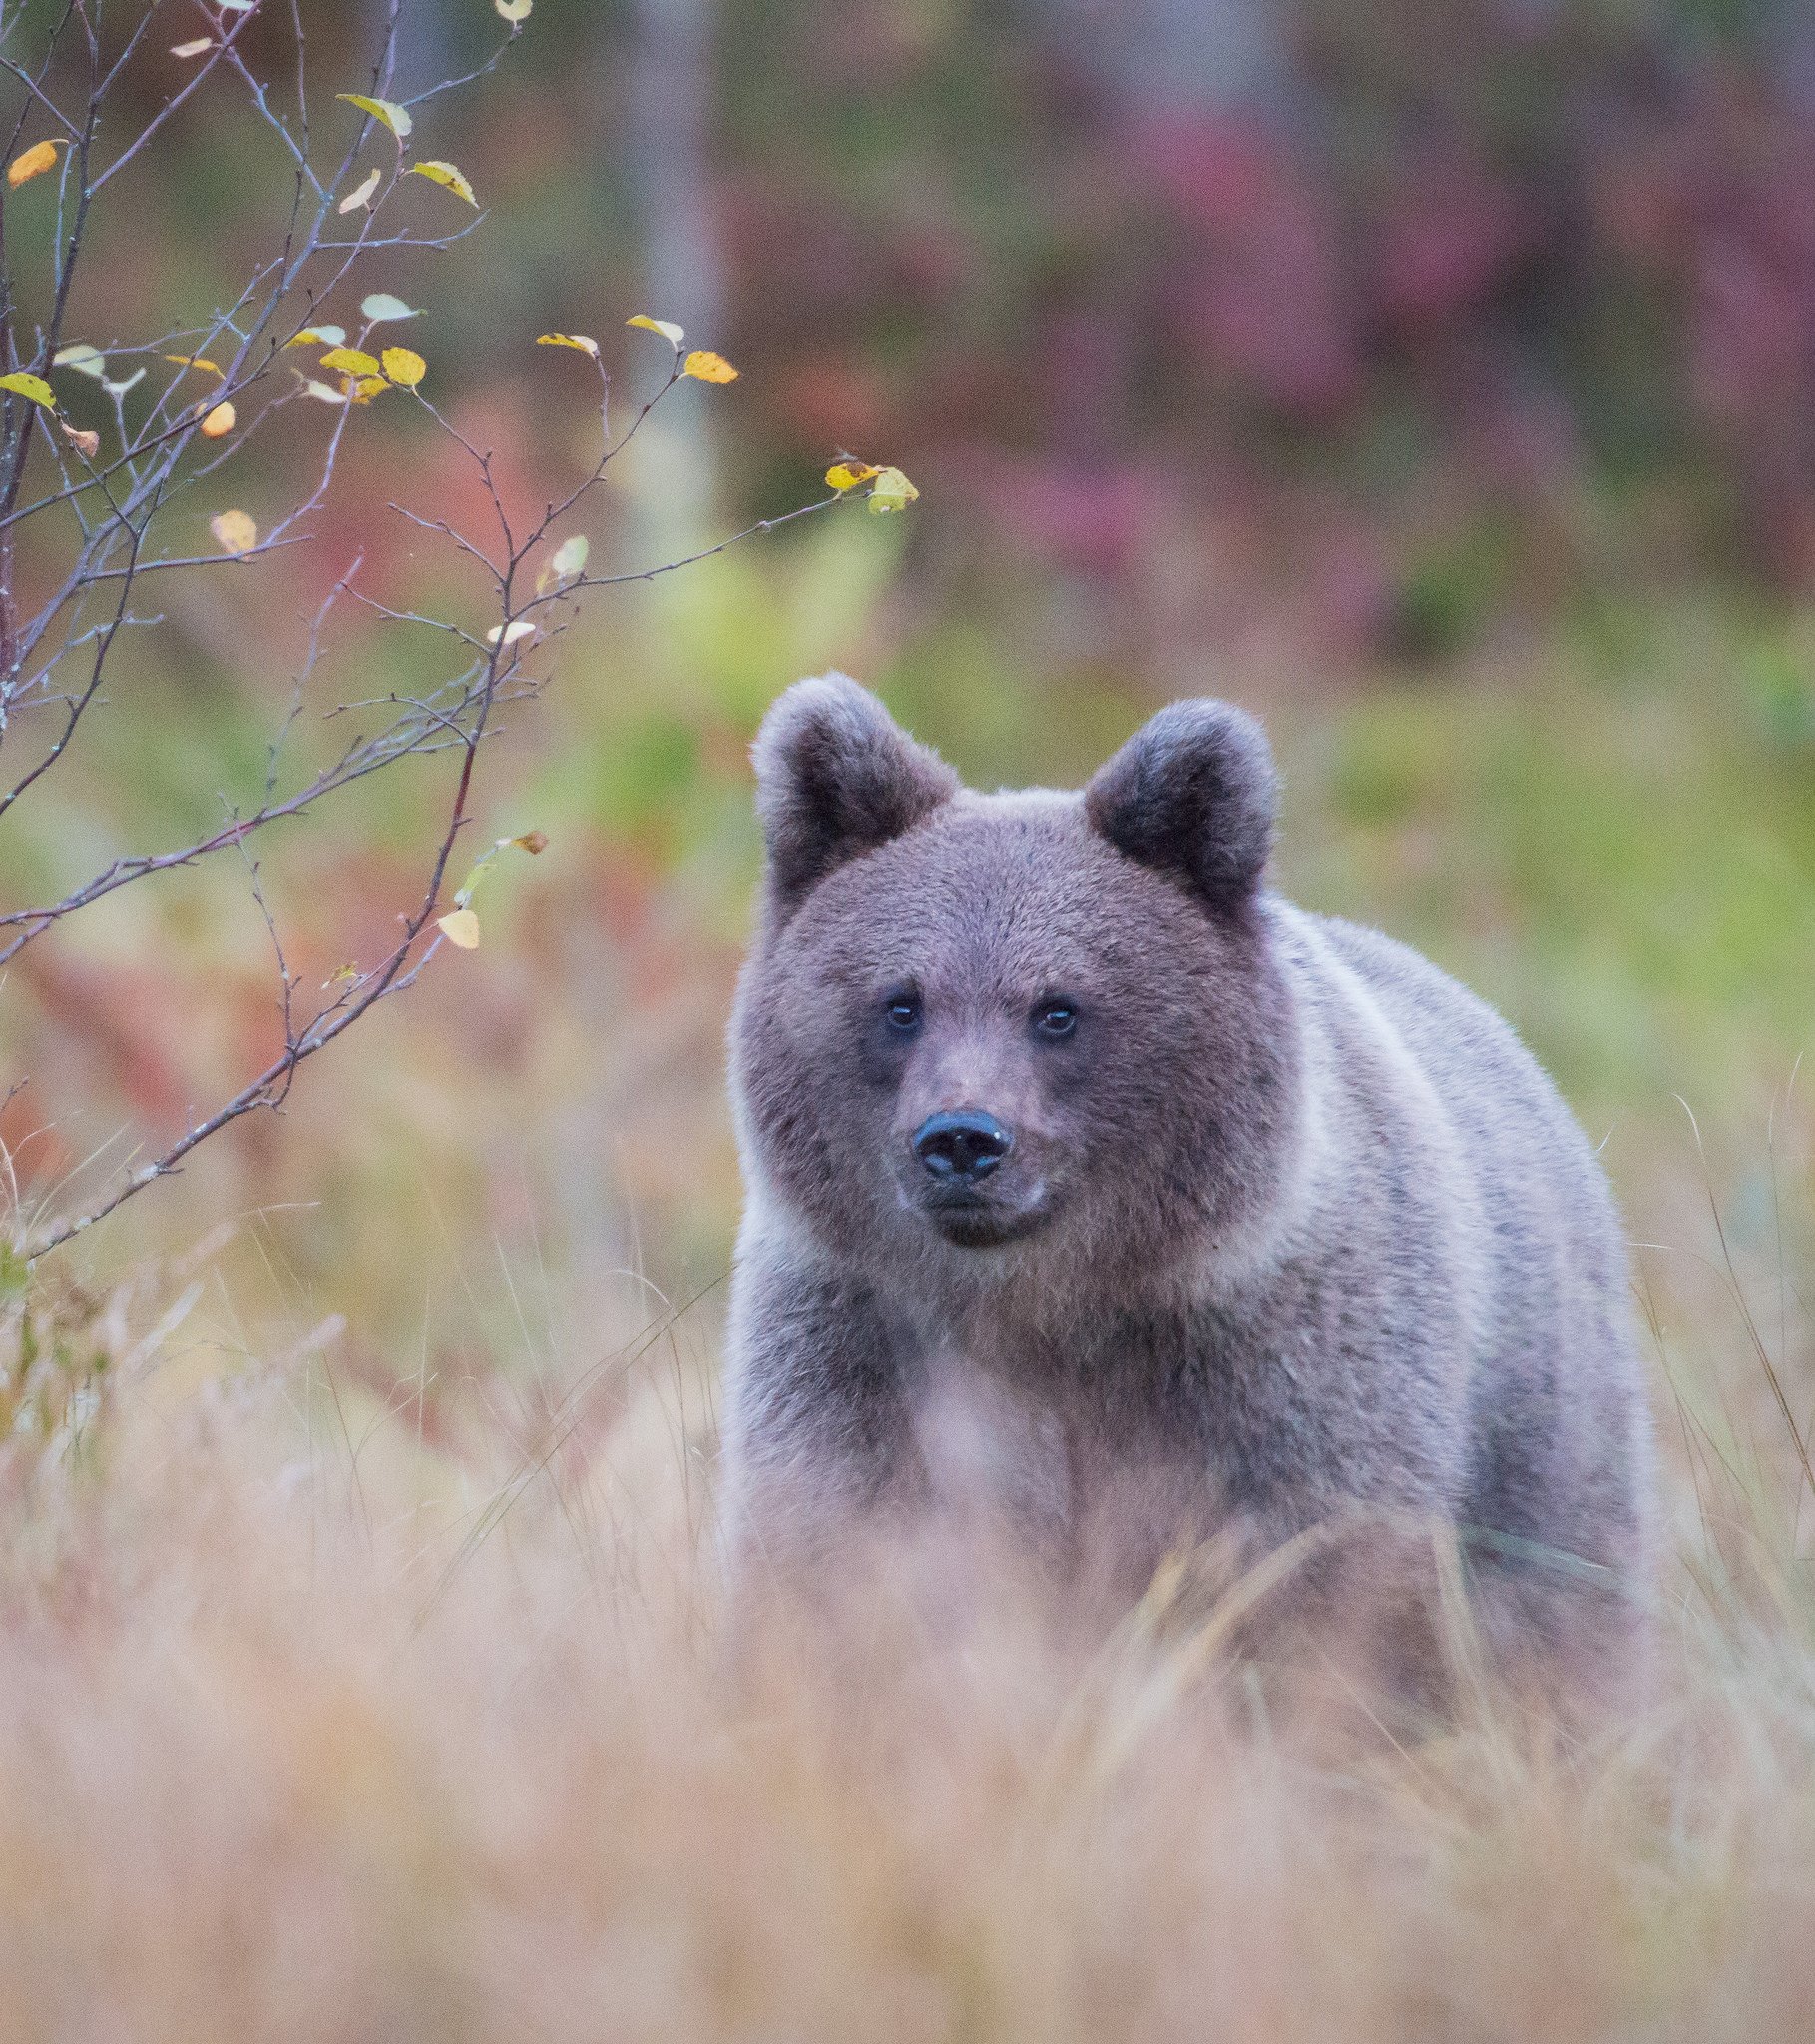 Bear, cub, autumn, Finland, Jarkko Järvinen